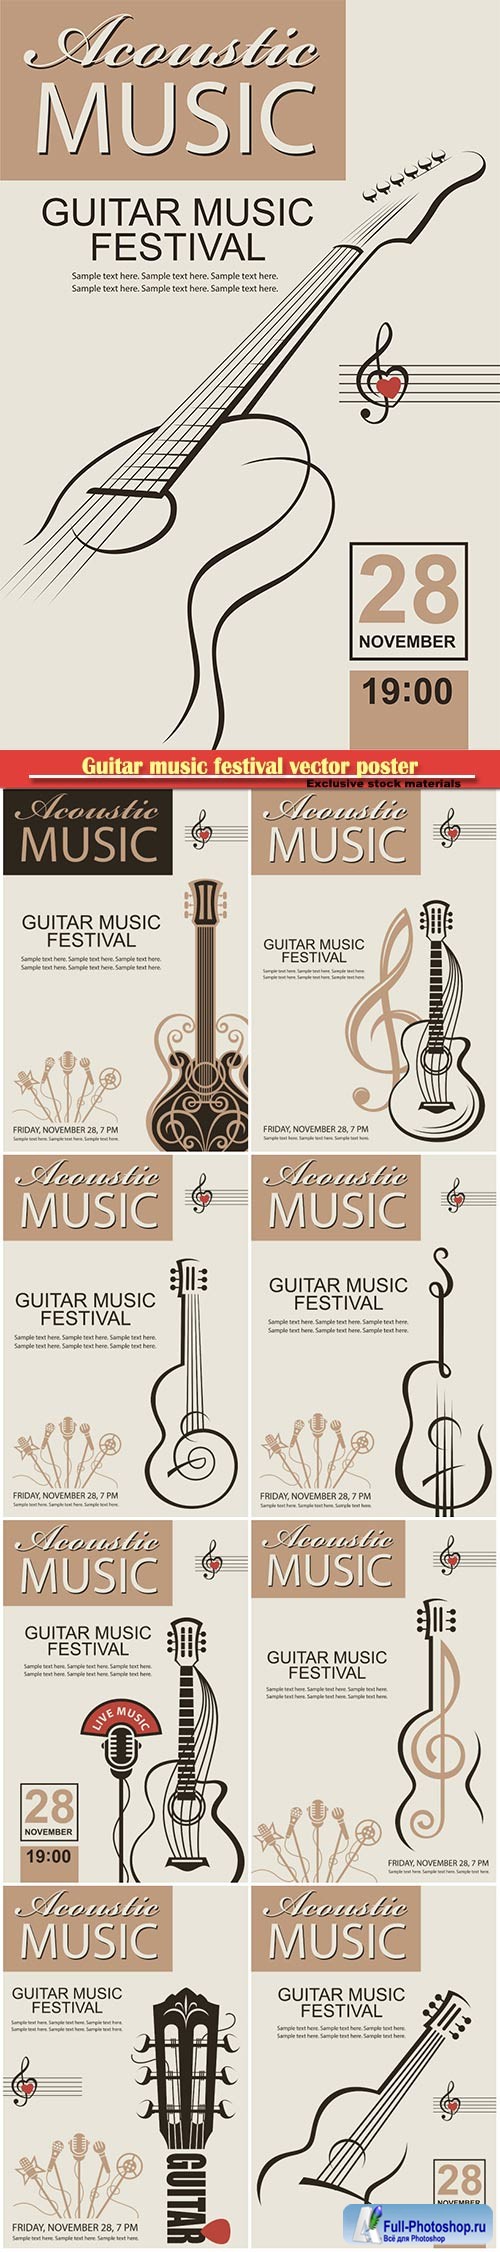 Guitar music festival vector poster